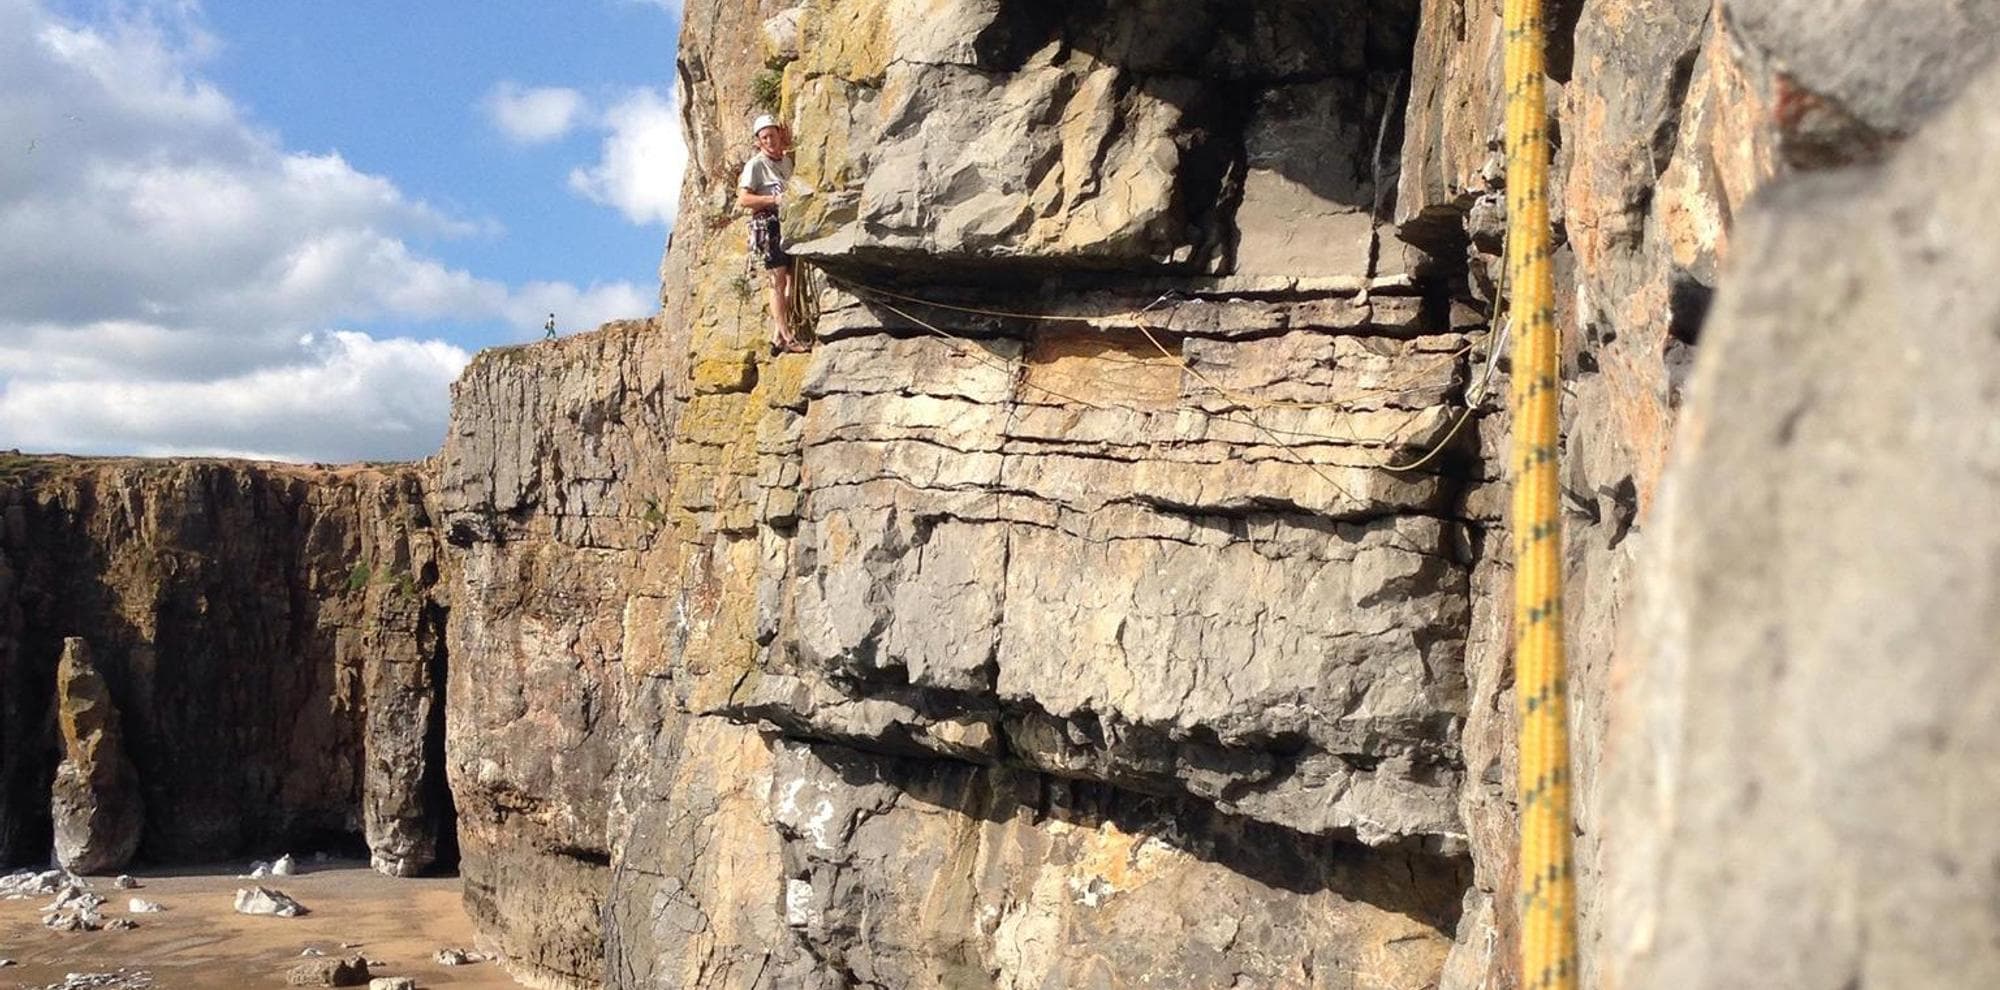 James climbing range east in Pembroke